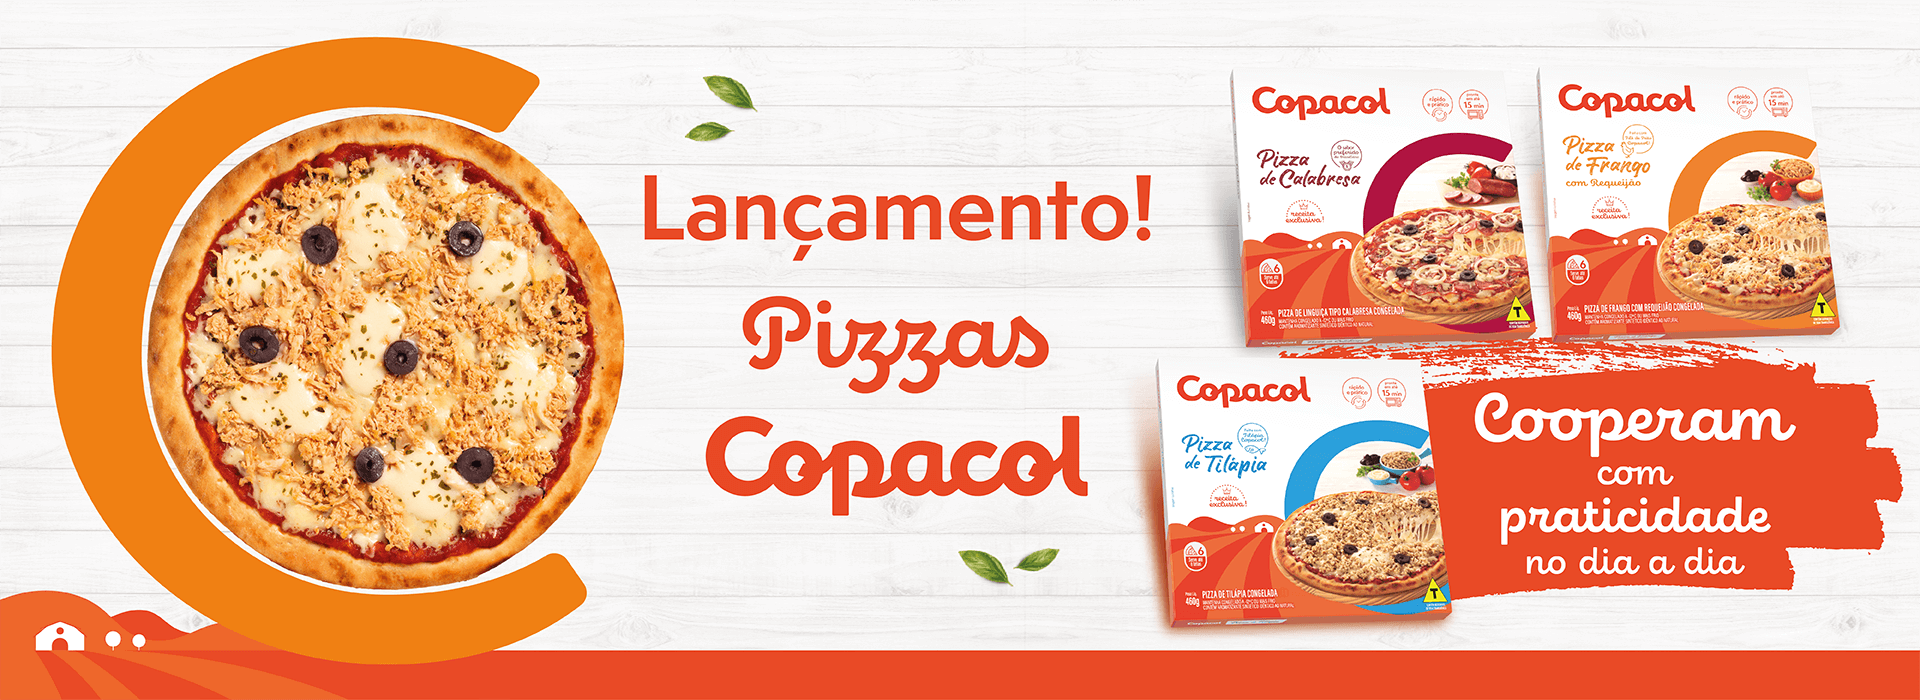 Lançamento Pizzas Copacol - Clique aqui e saiba mais